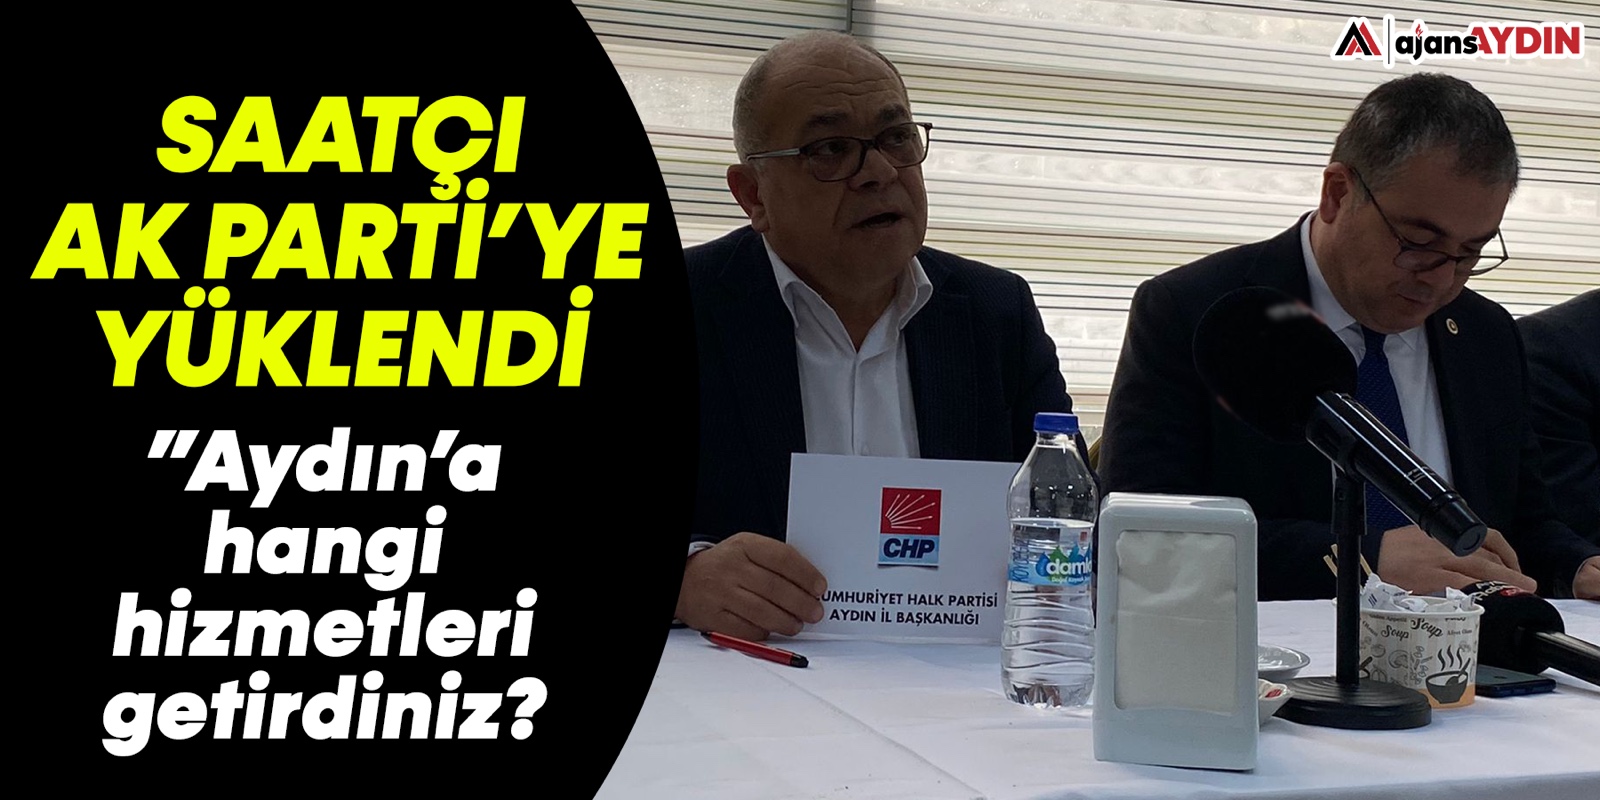 Saatçı AK Parti'ye yüklendi: "Aydın'da hangi hizmetleri getirdiniz?"